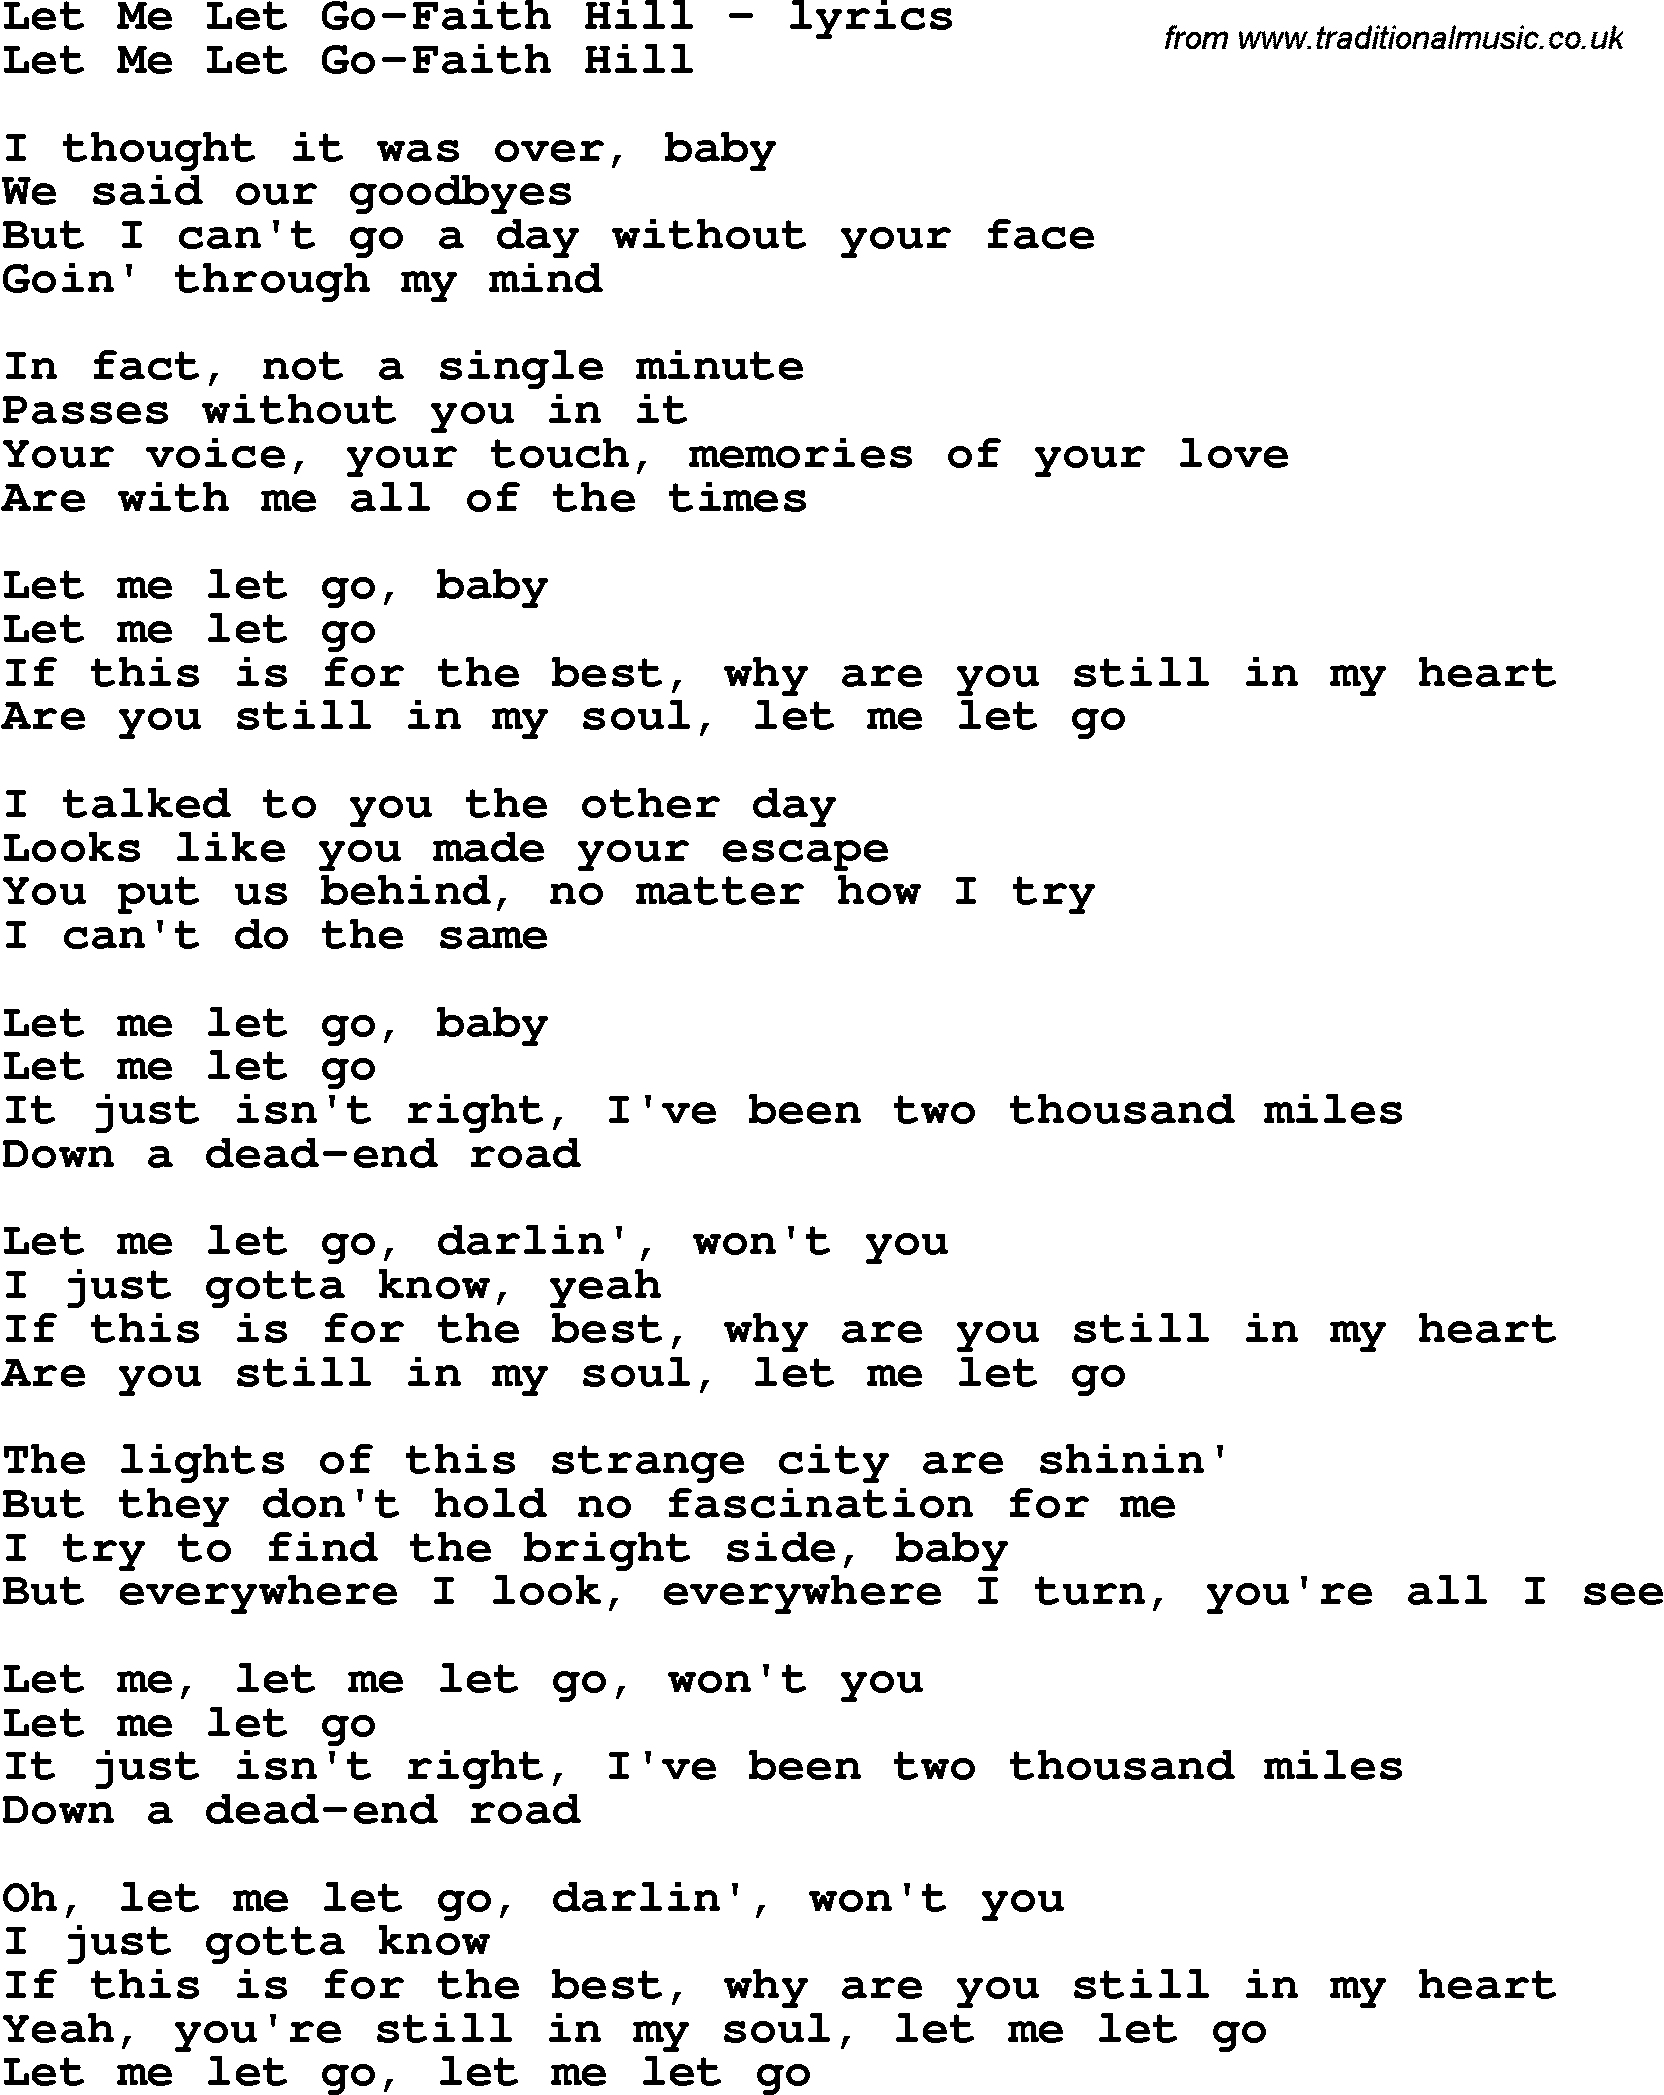 Love Song Lyrics for: Let Me Let Go-Faith Hill